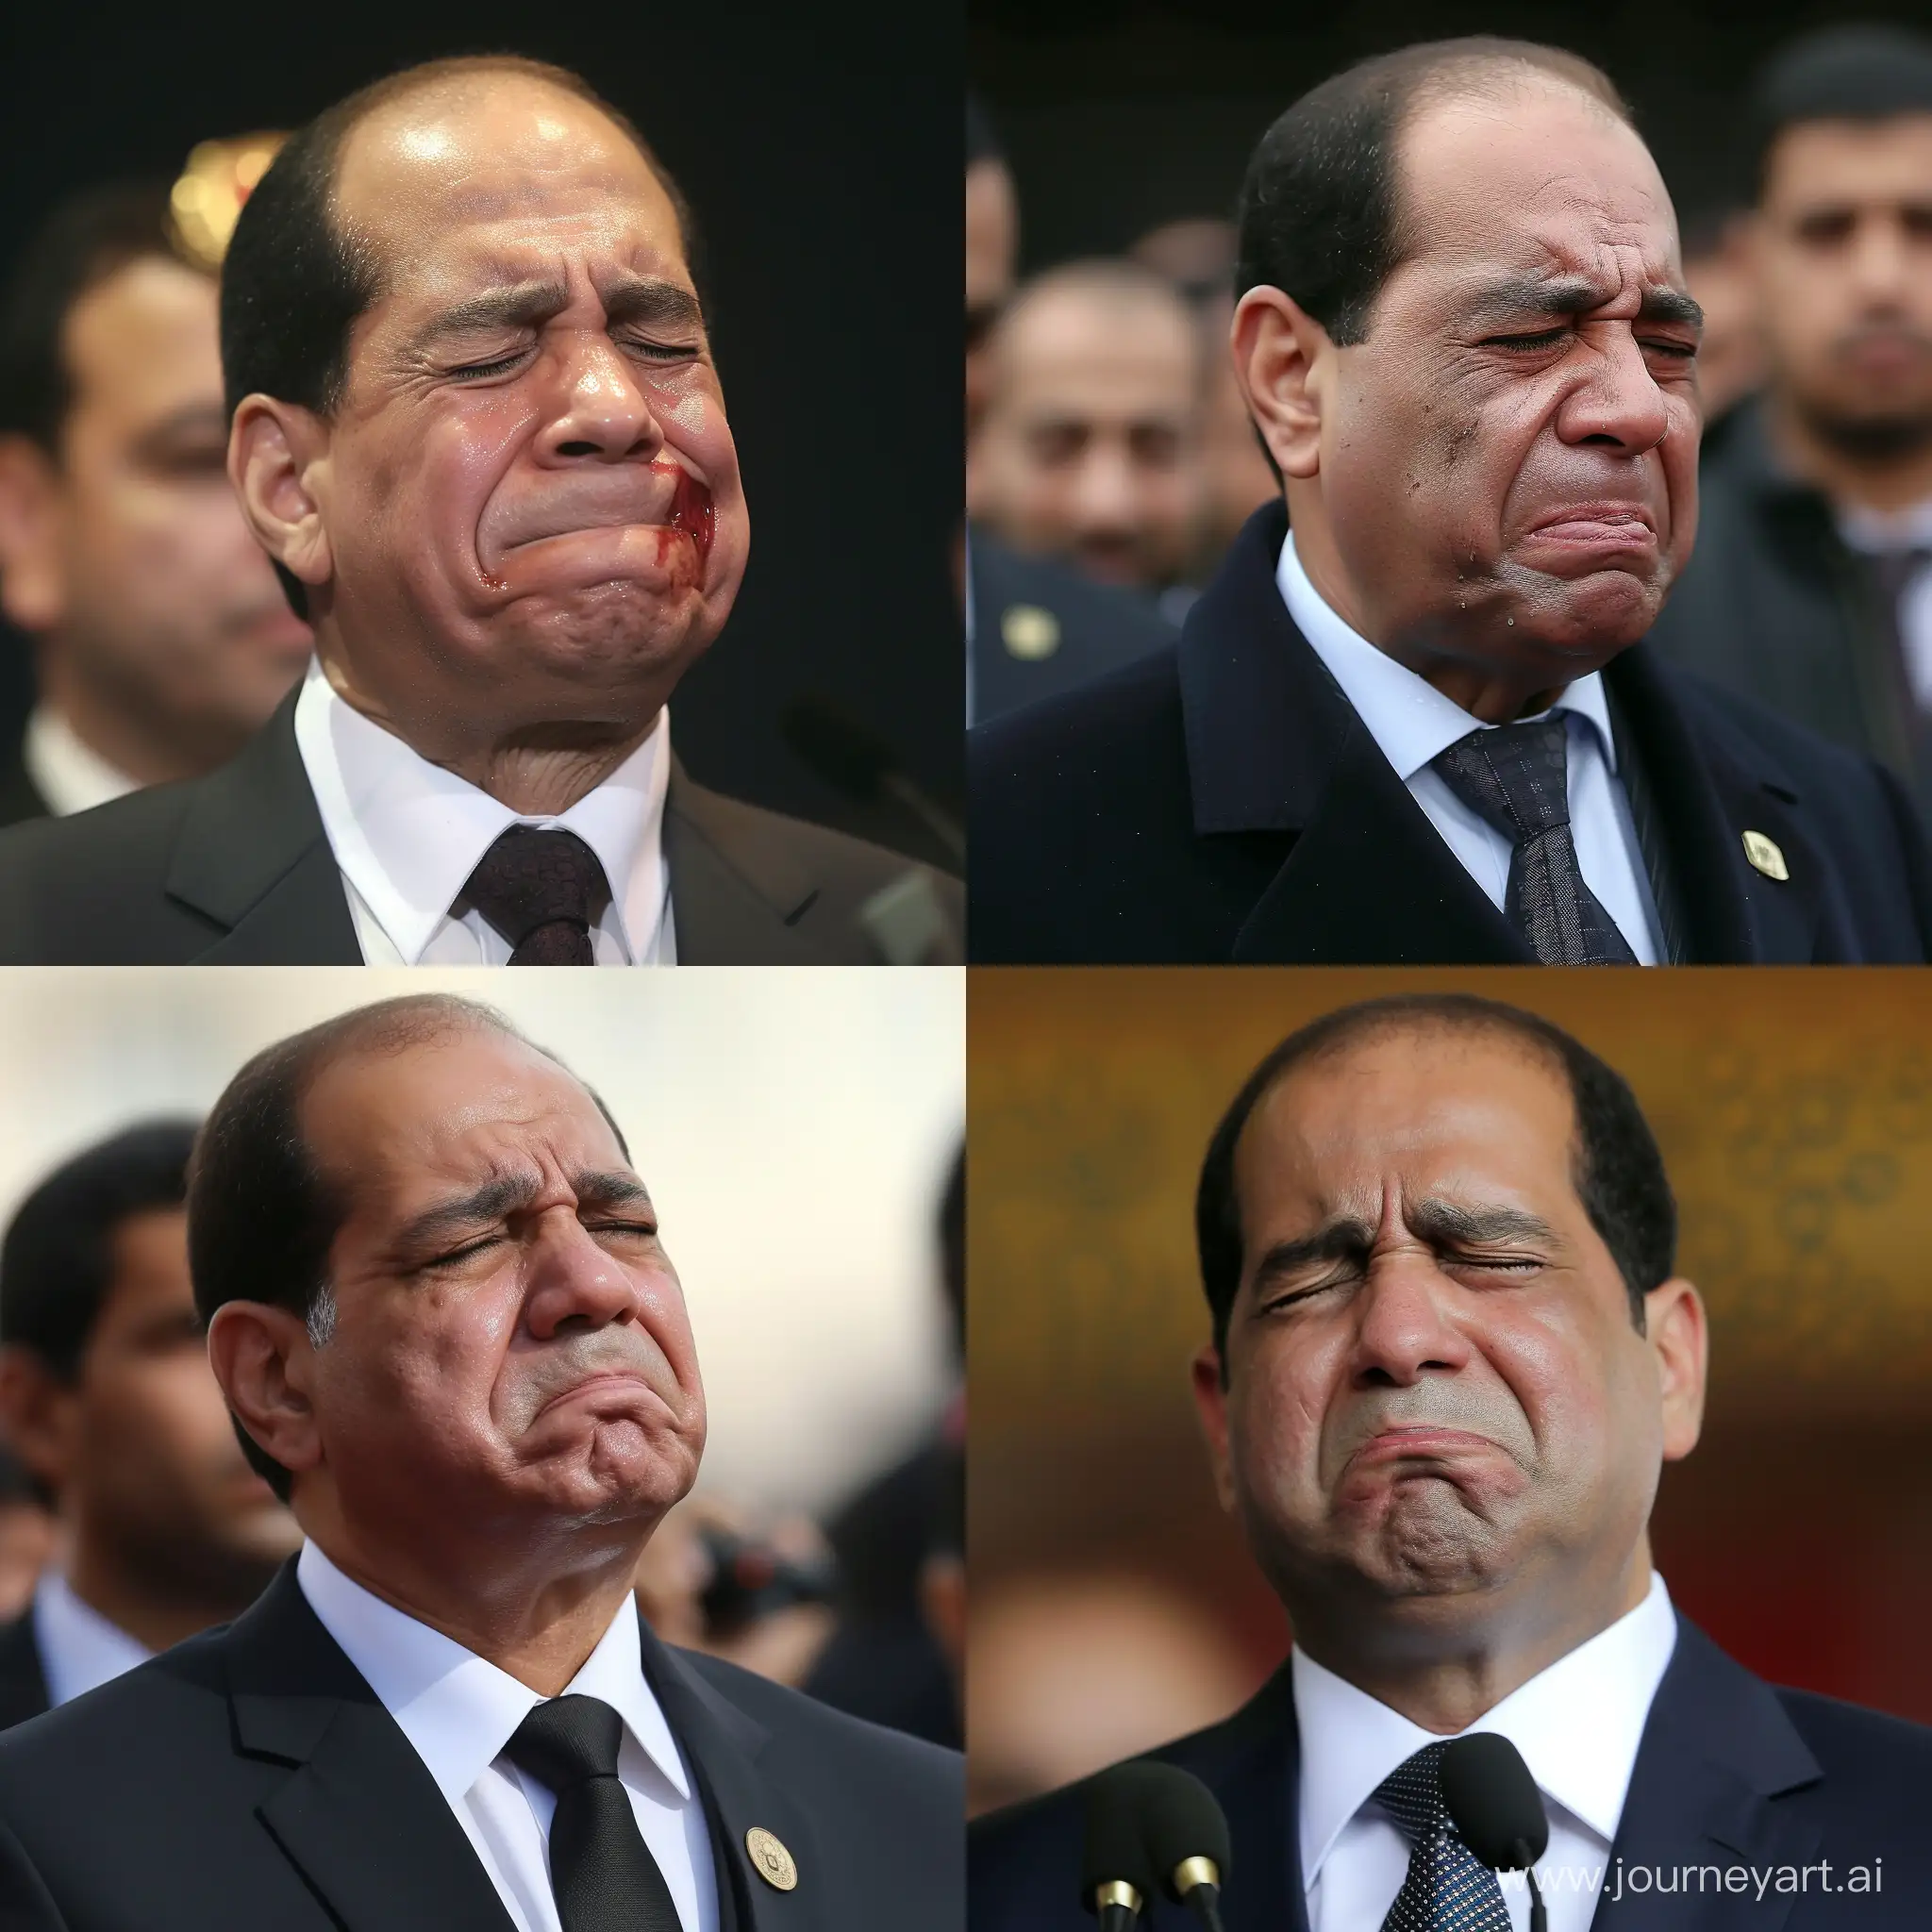 Abdel fattah el sisi crying